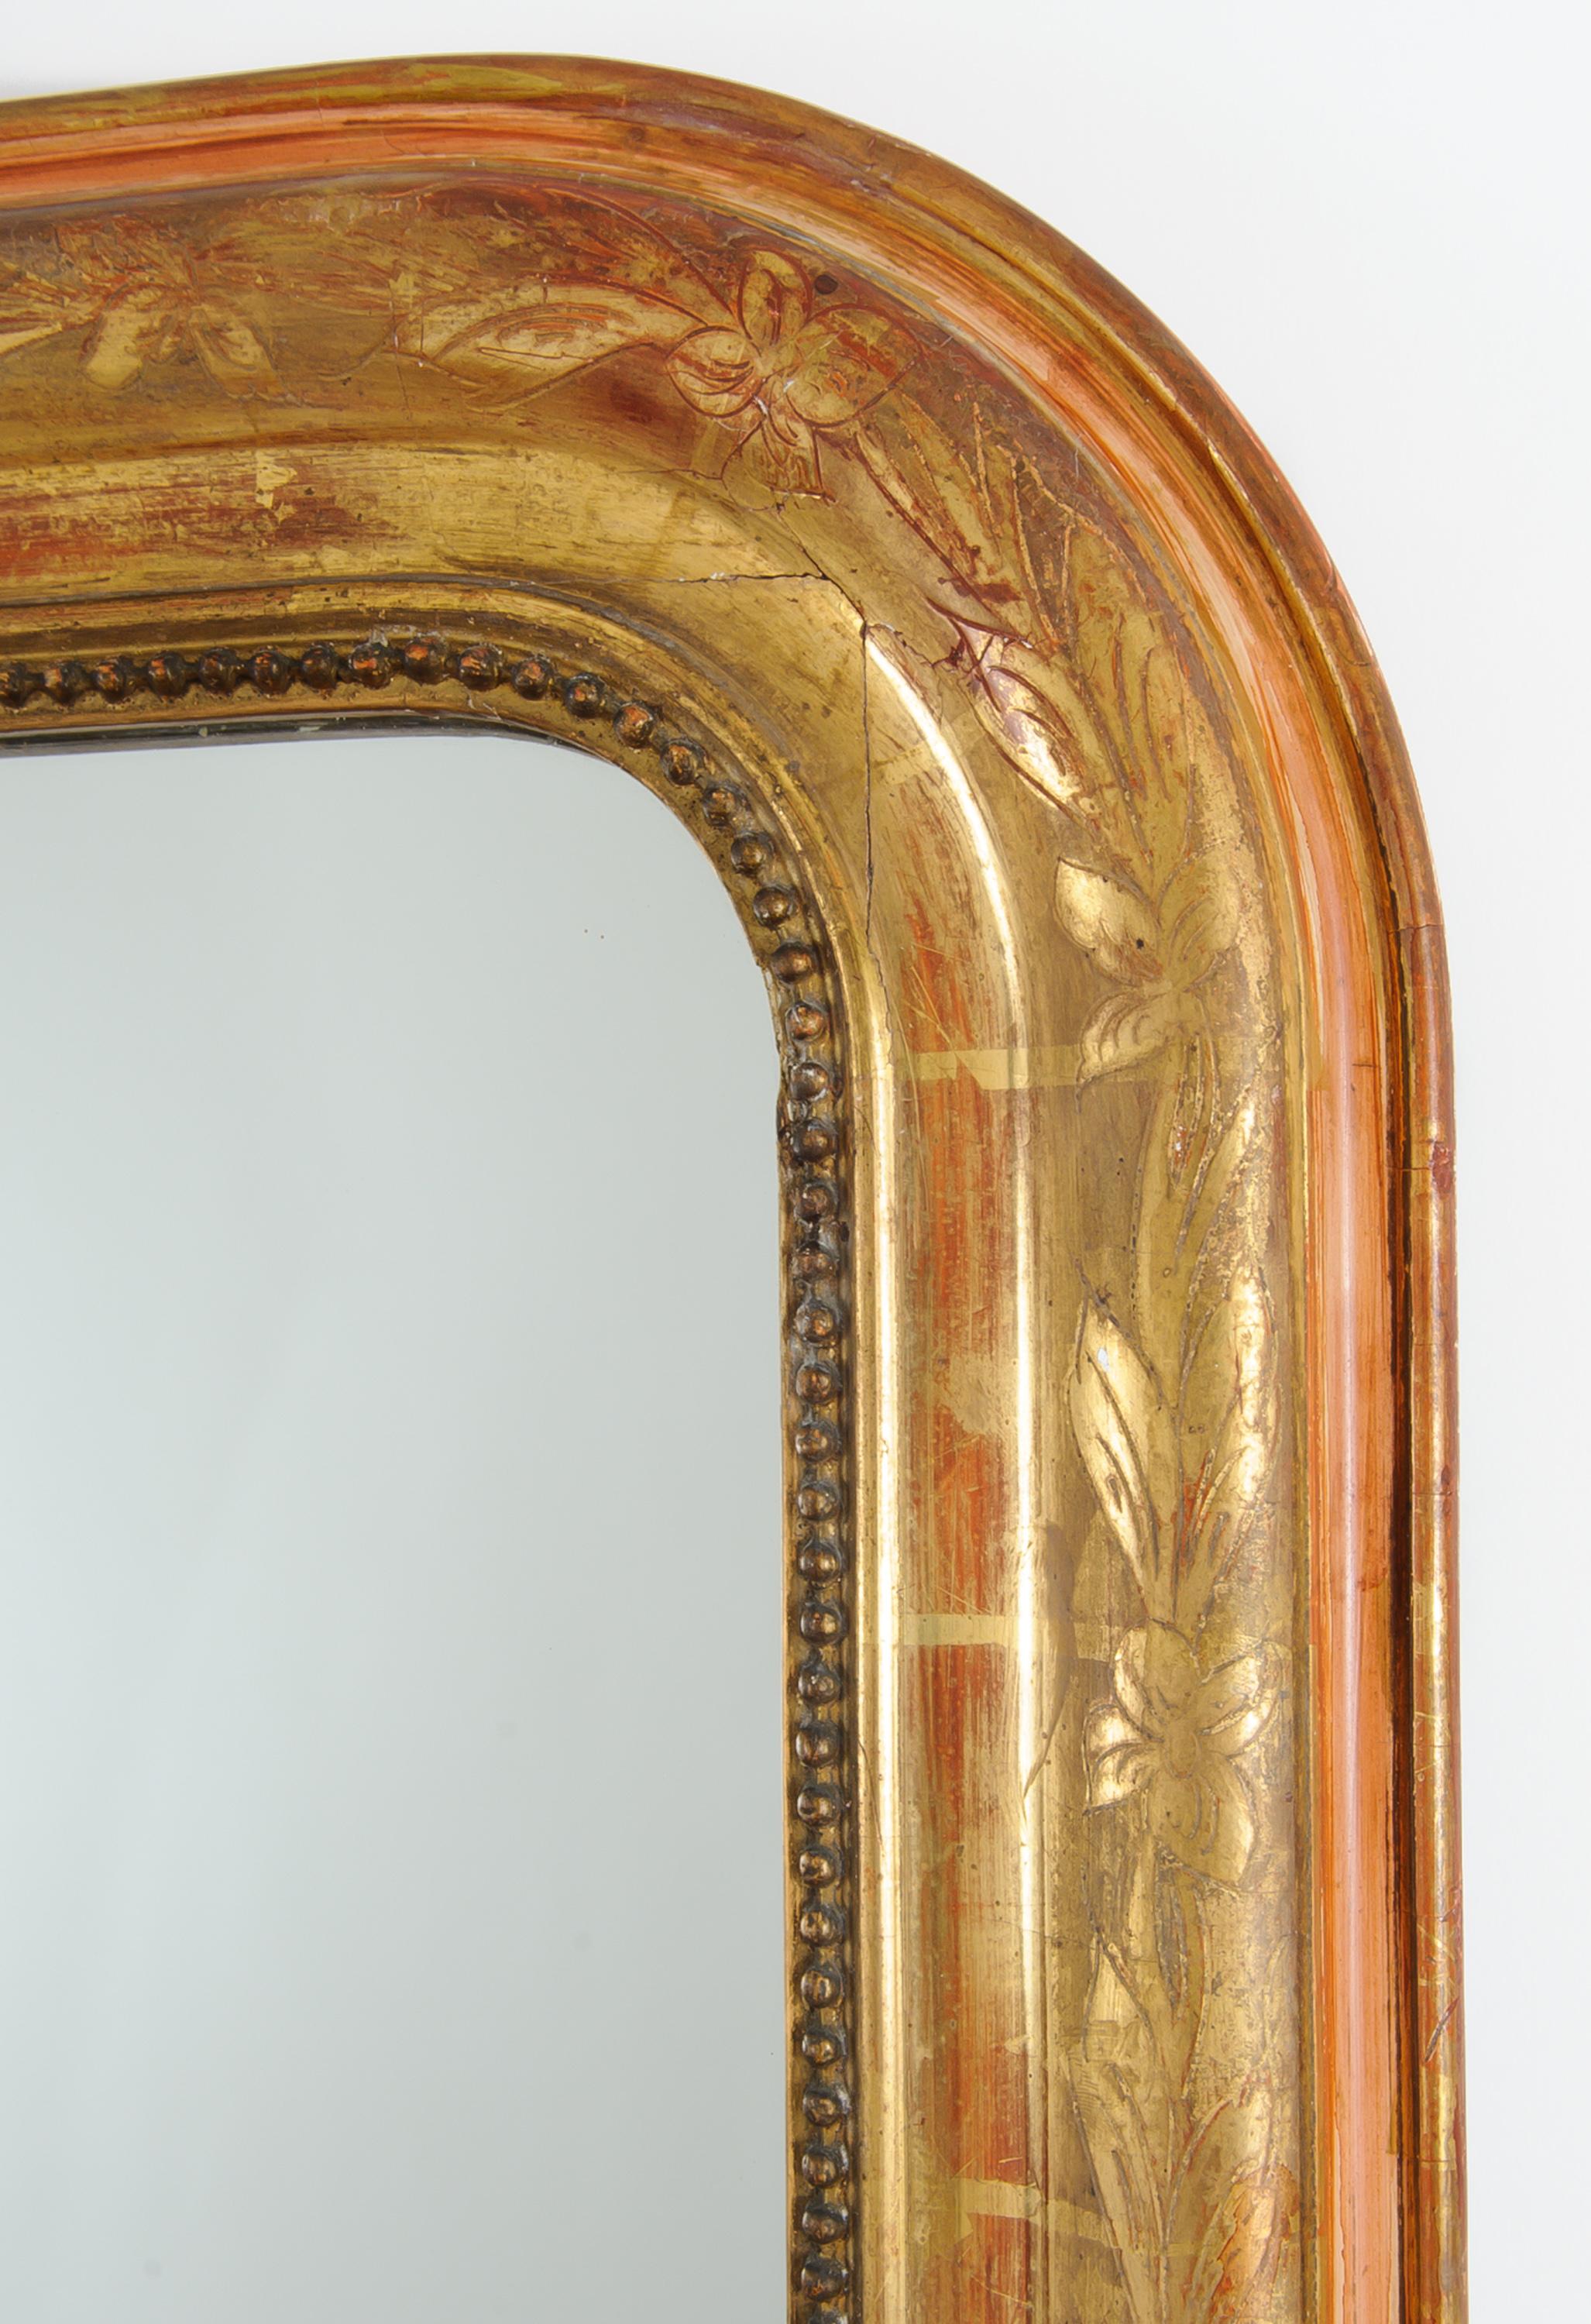 Ce miroir d'époque a la finition d'origine en feuille d'or brillante avec un motif floral sur tout le cadre.  Il est entouré de perles finement sculptées. La couche de bole rouge est apparente et complète joliment la finition de la feuille d'or, qui